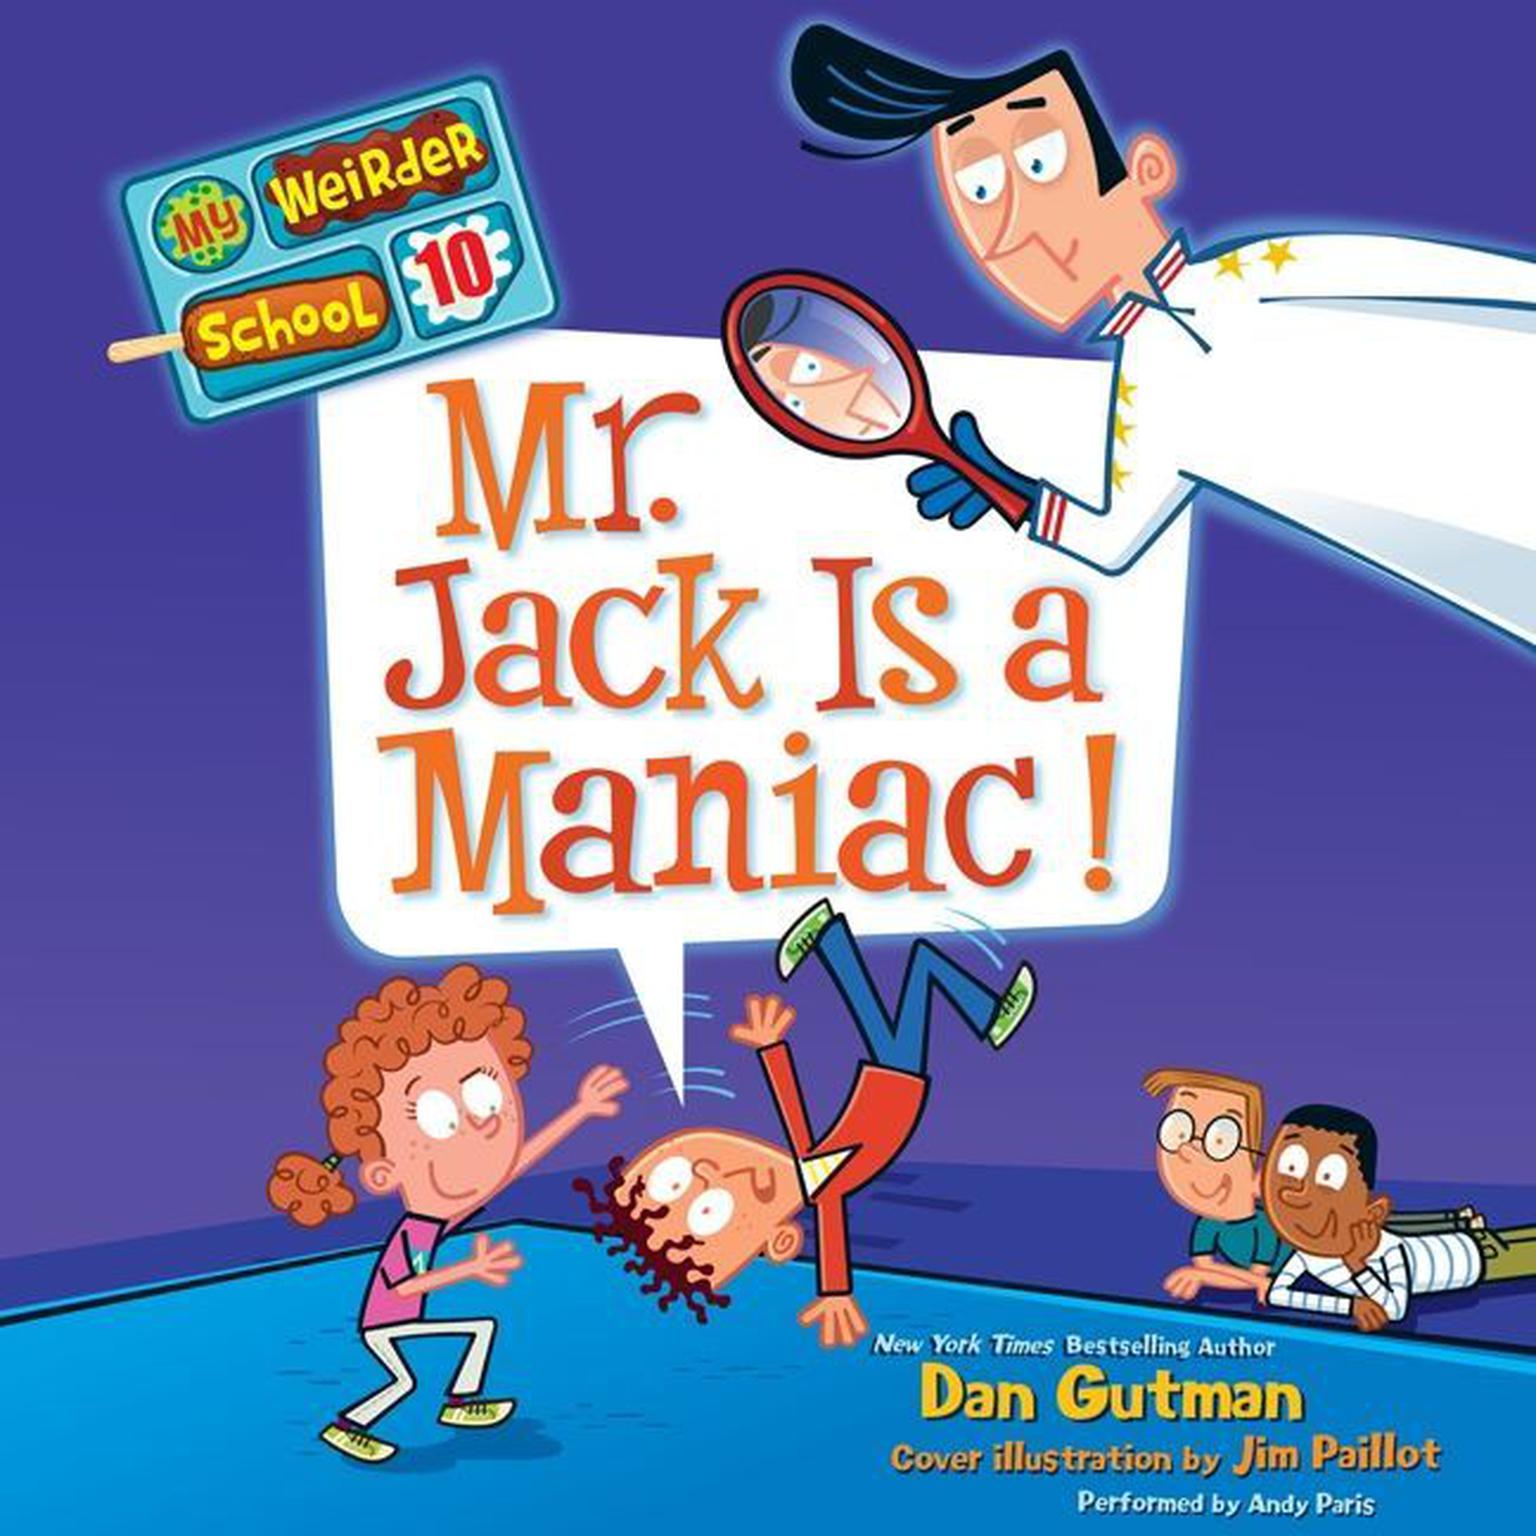 My Weirder School #10: Mr. Jack Is a Maniac! Audiobook, by Dan Gutman